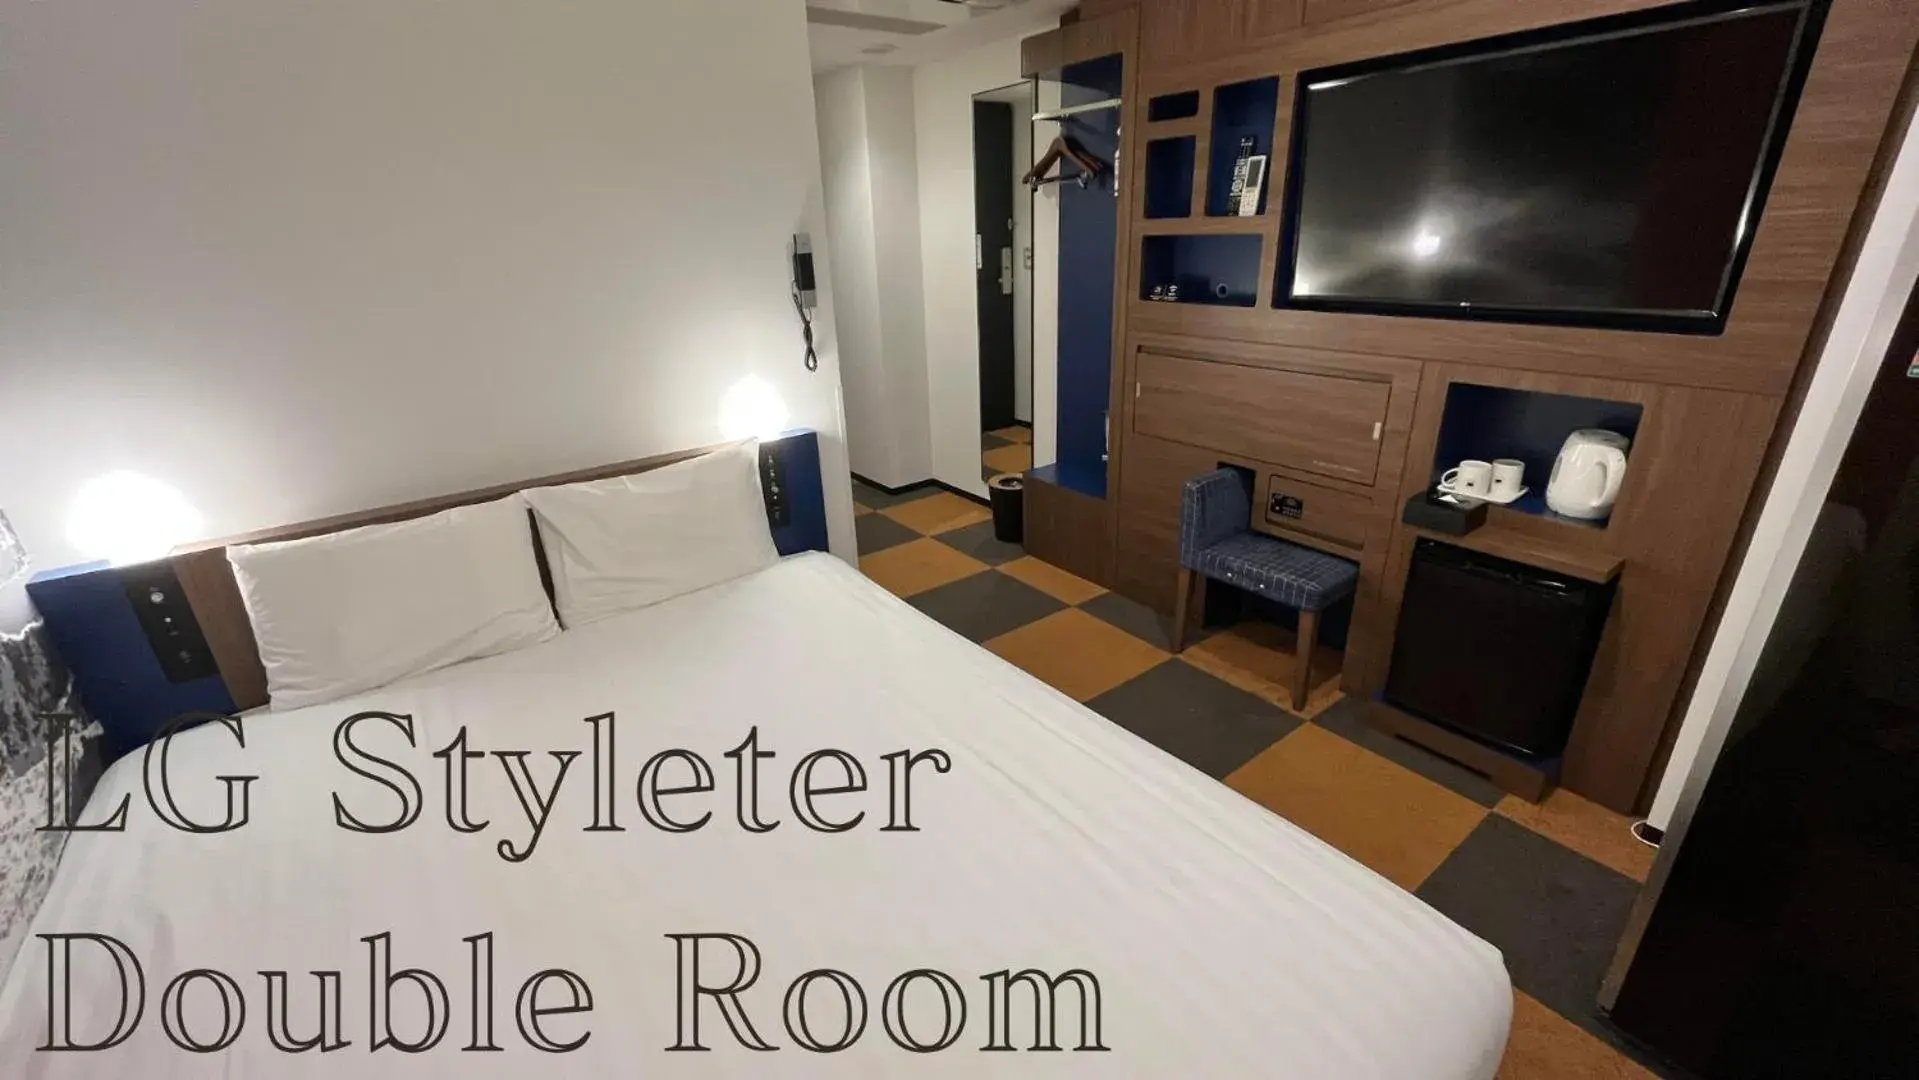 Bedroom, Bed in Henn na Hotel Tokyo Haneda